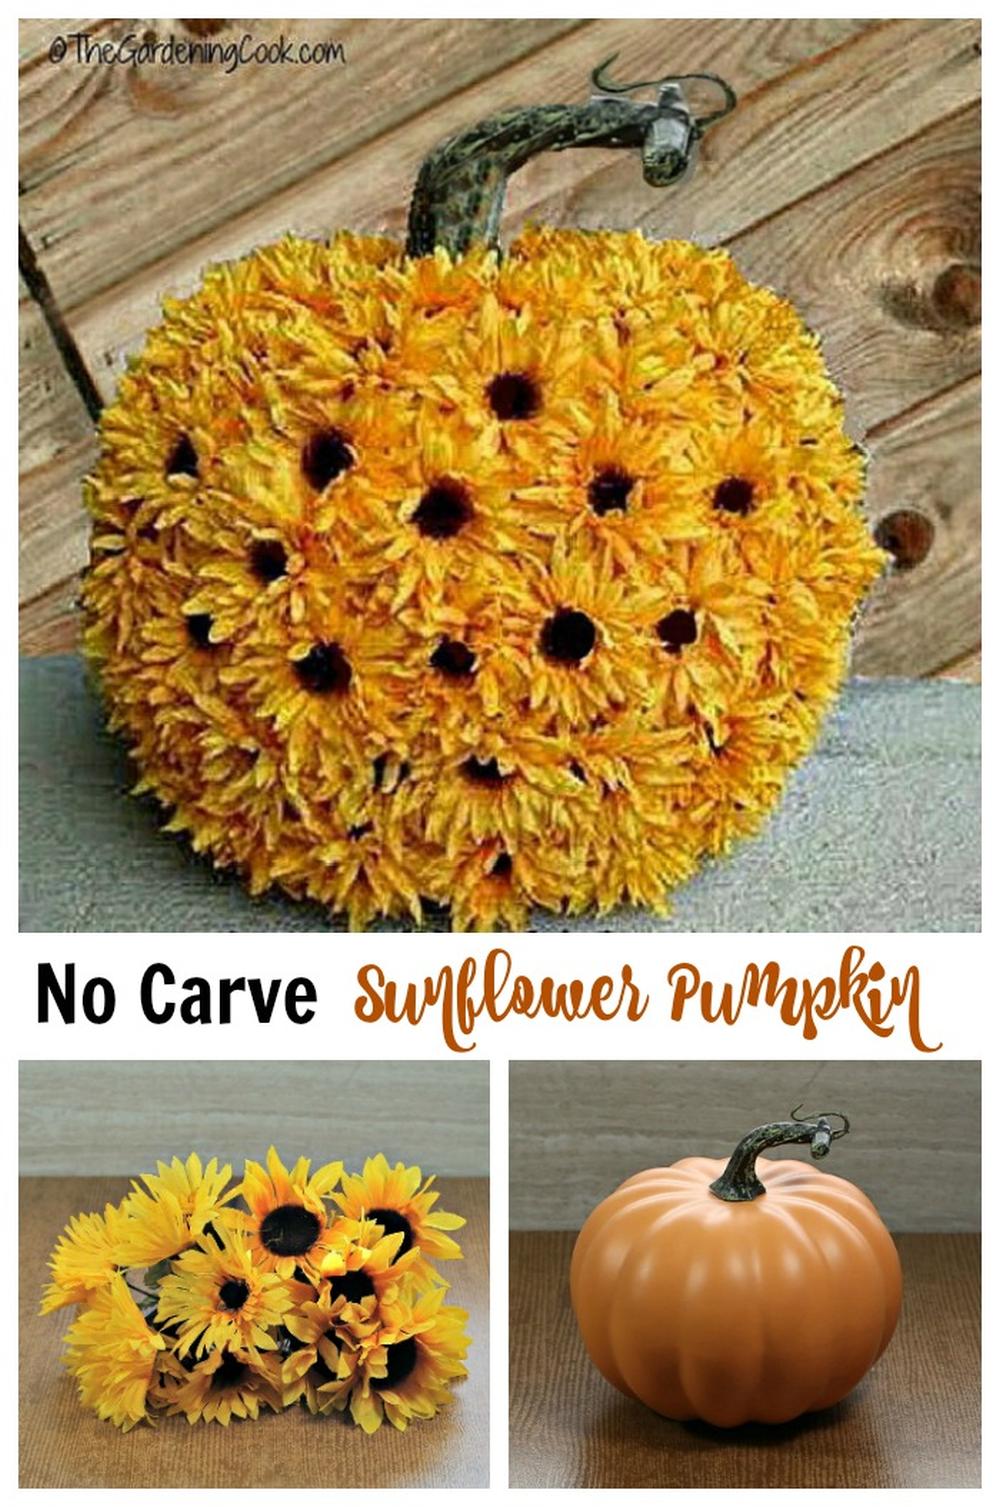 Sunflower pumpkin diy thanksgiving centerpieces